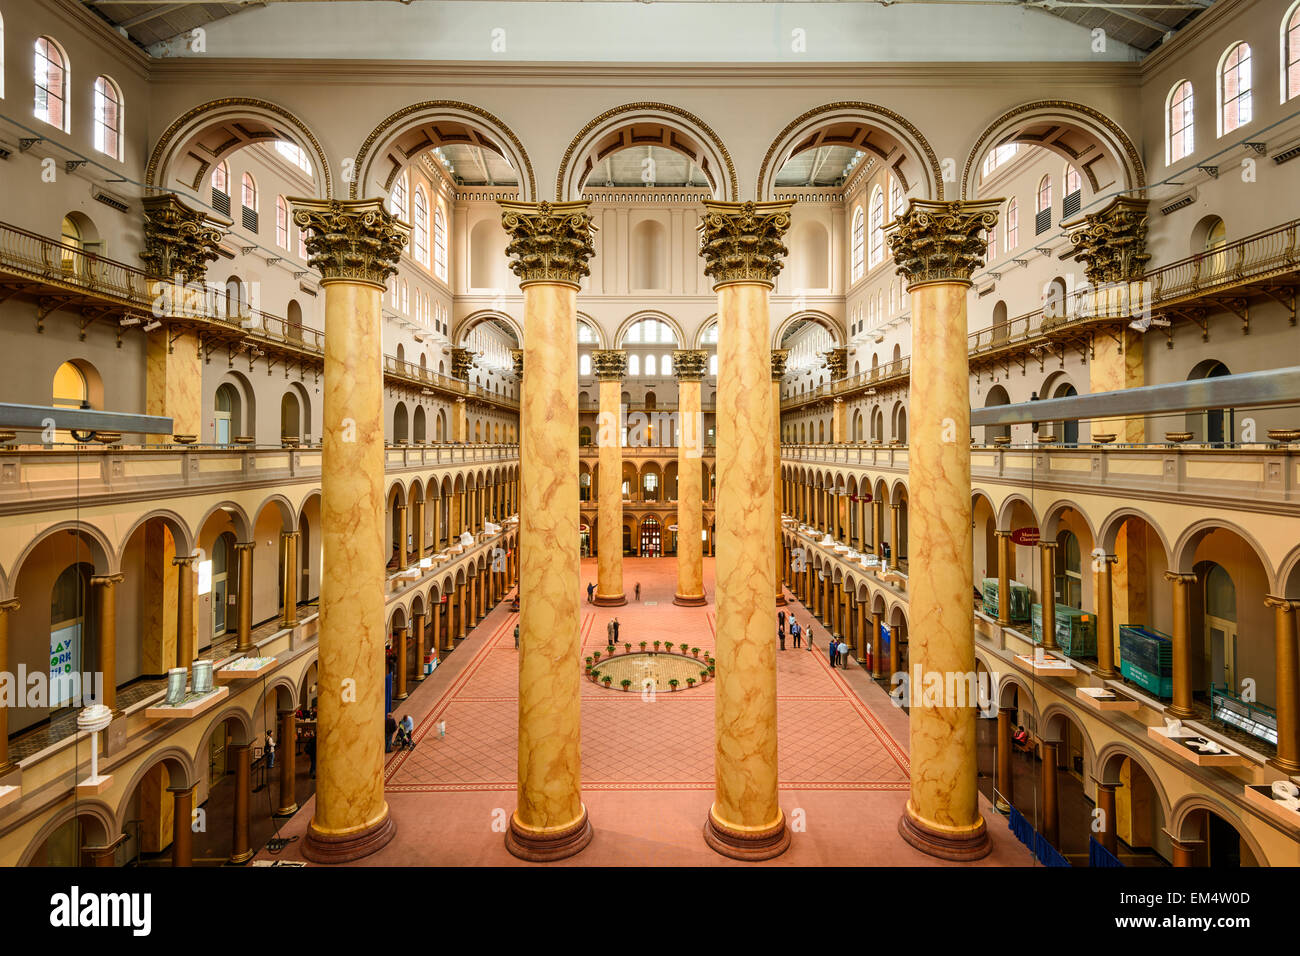 Le grand hall de l'édifice National Museum de Washington DC. Banque D'Images